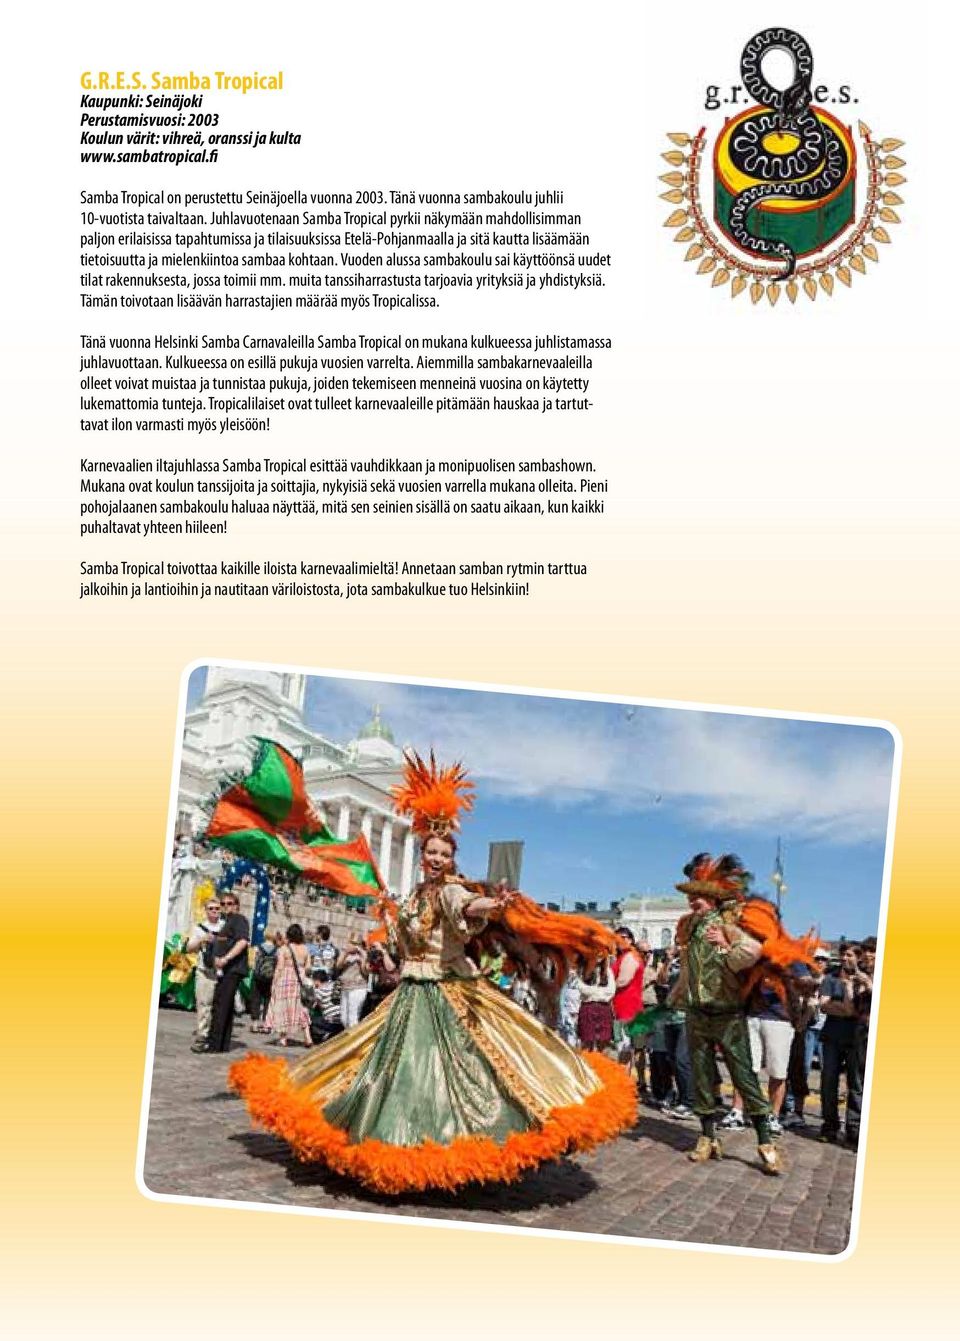 Juhlavuotenaan Samba Tropical pyrkii näkymään mahdollisimman paljon erilaisissa tapahtumissa ja tilaisuuksissa Etelä-Pohjanmaalla ja sitä kautta lisäämään tietoisuutta ja mielenkiintoa sambaa kohtaan.